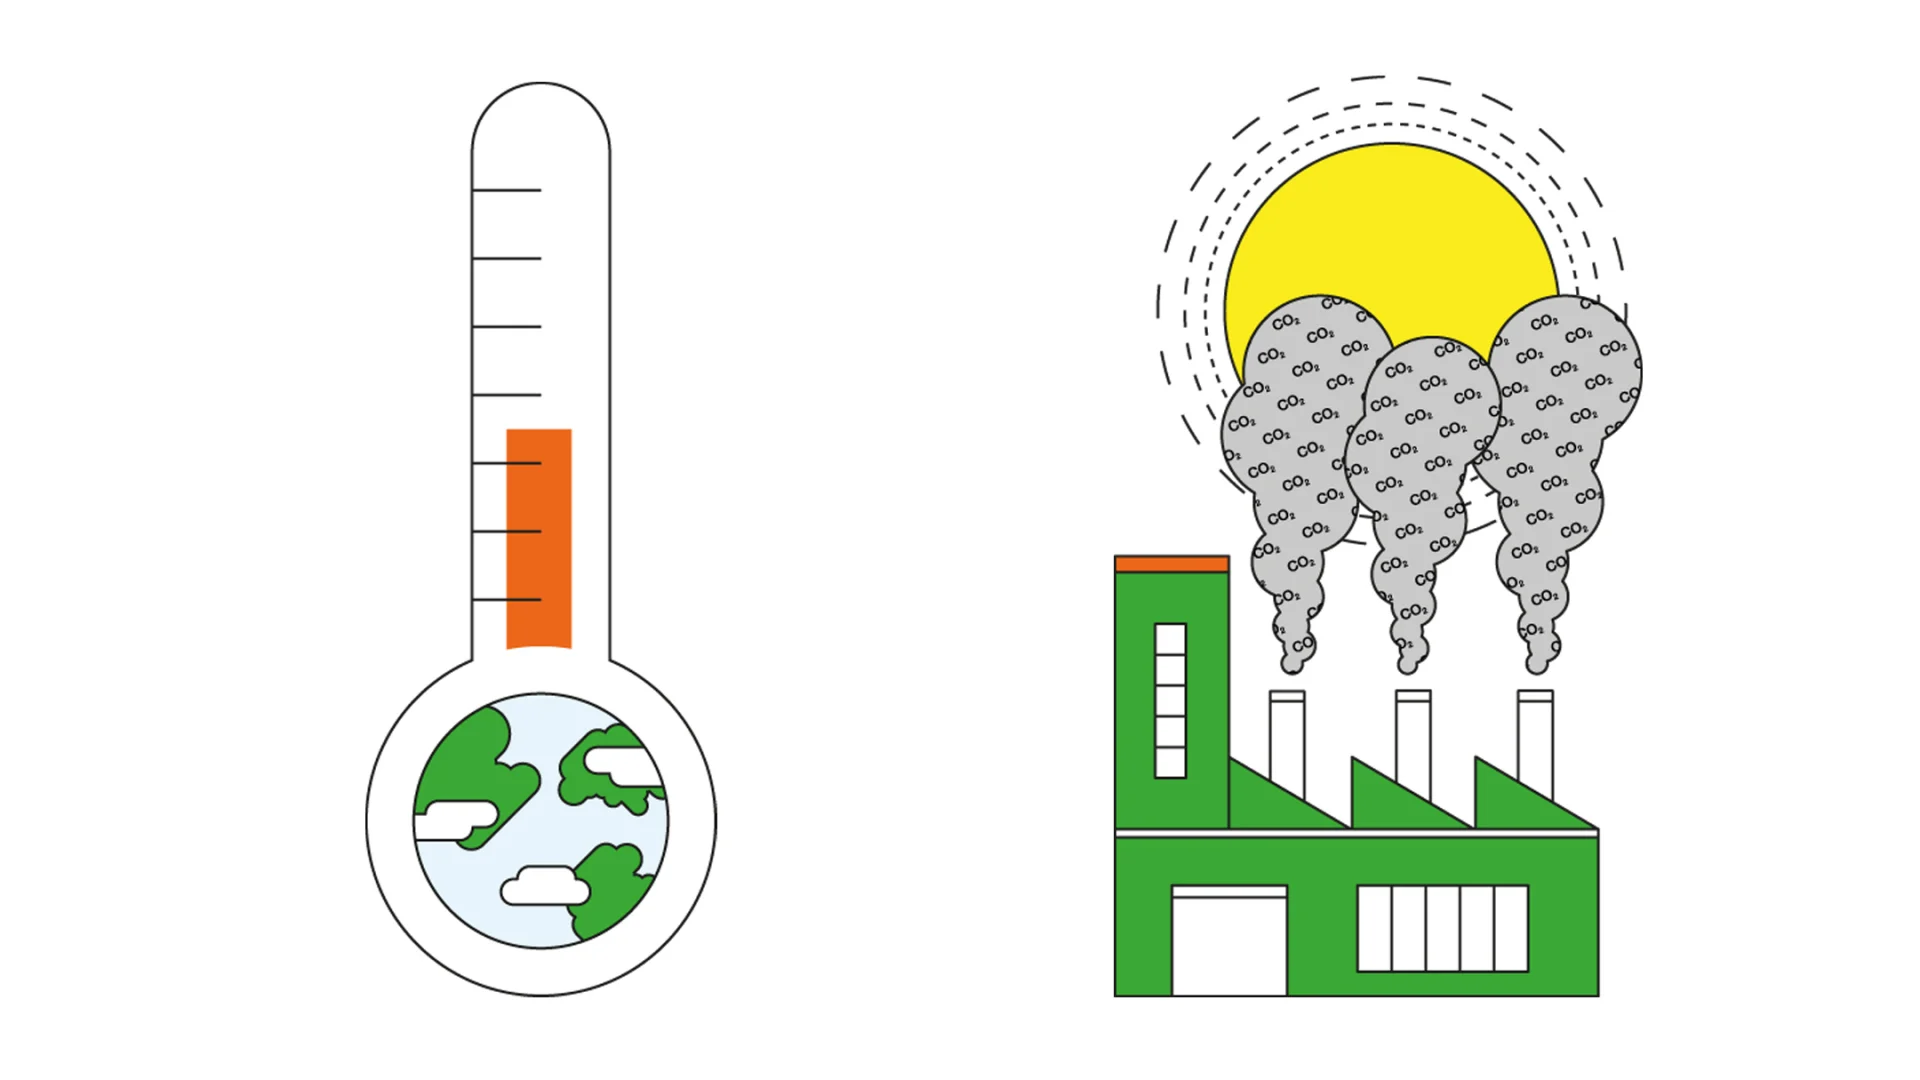 Illustration zeigt einen Thermometer, bei dem die Temperatur hoch ist. Gegenüber ist eine Fabrik abgebildet, bei welcher der Rauch aus den Kaminen die Sonne verdeckt.